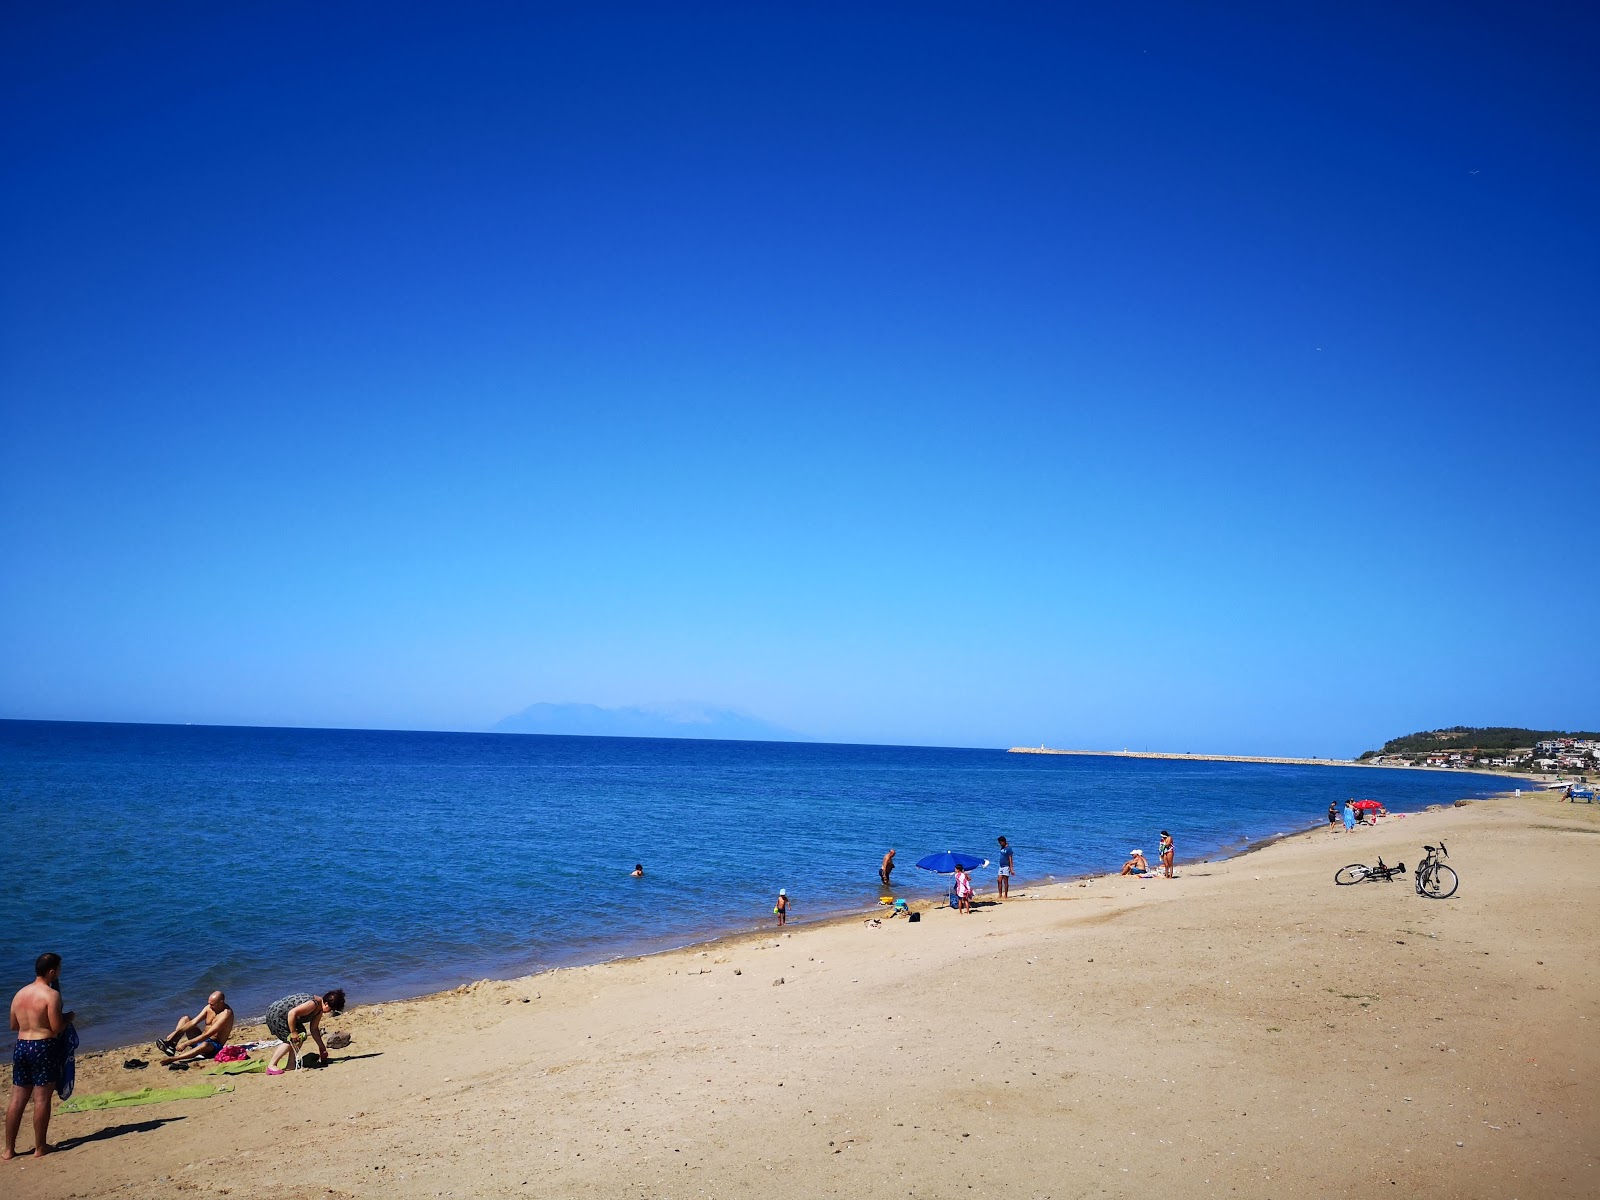 Gulcavus beach'in fotoğrafı parlak ince kum yüzey ile